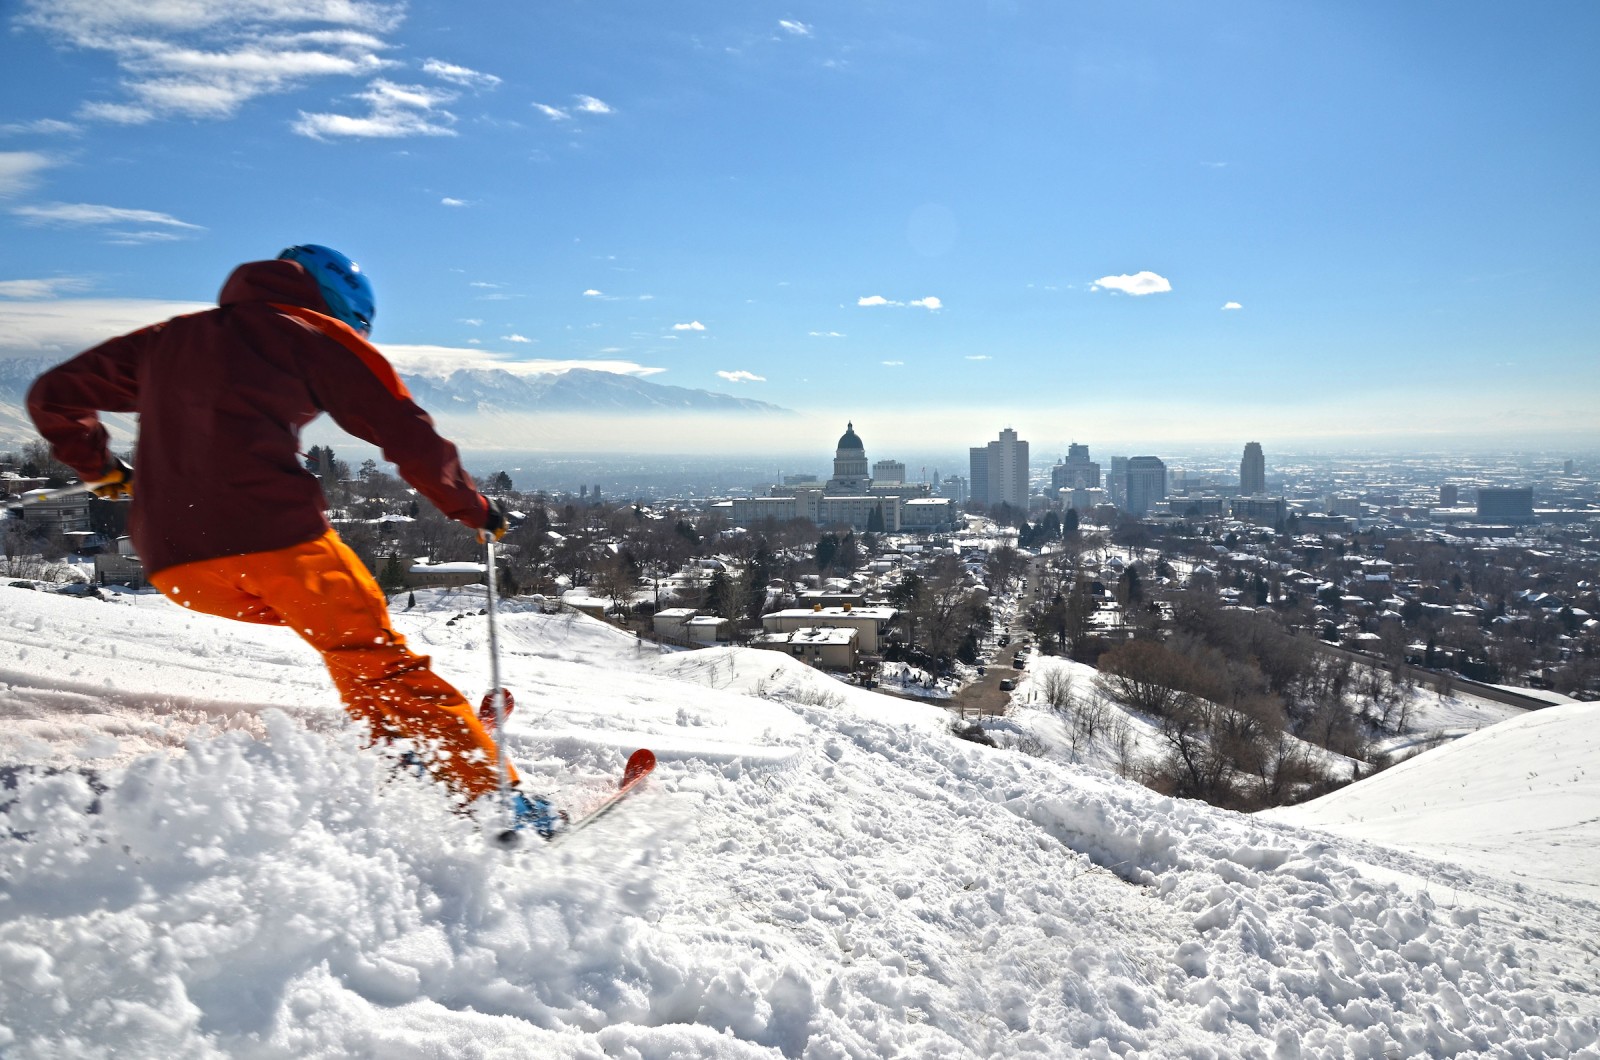 Ski City: A Destination Unlike Any Other